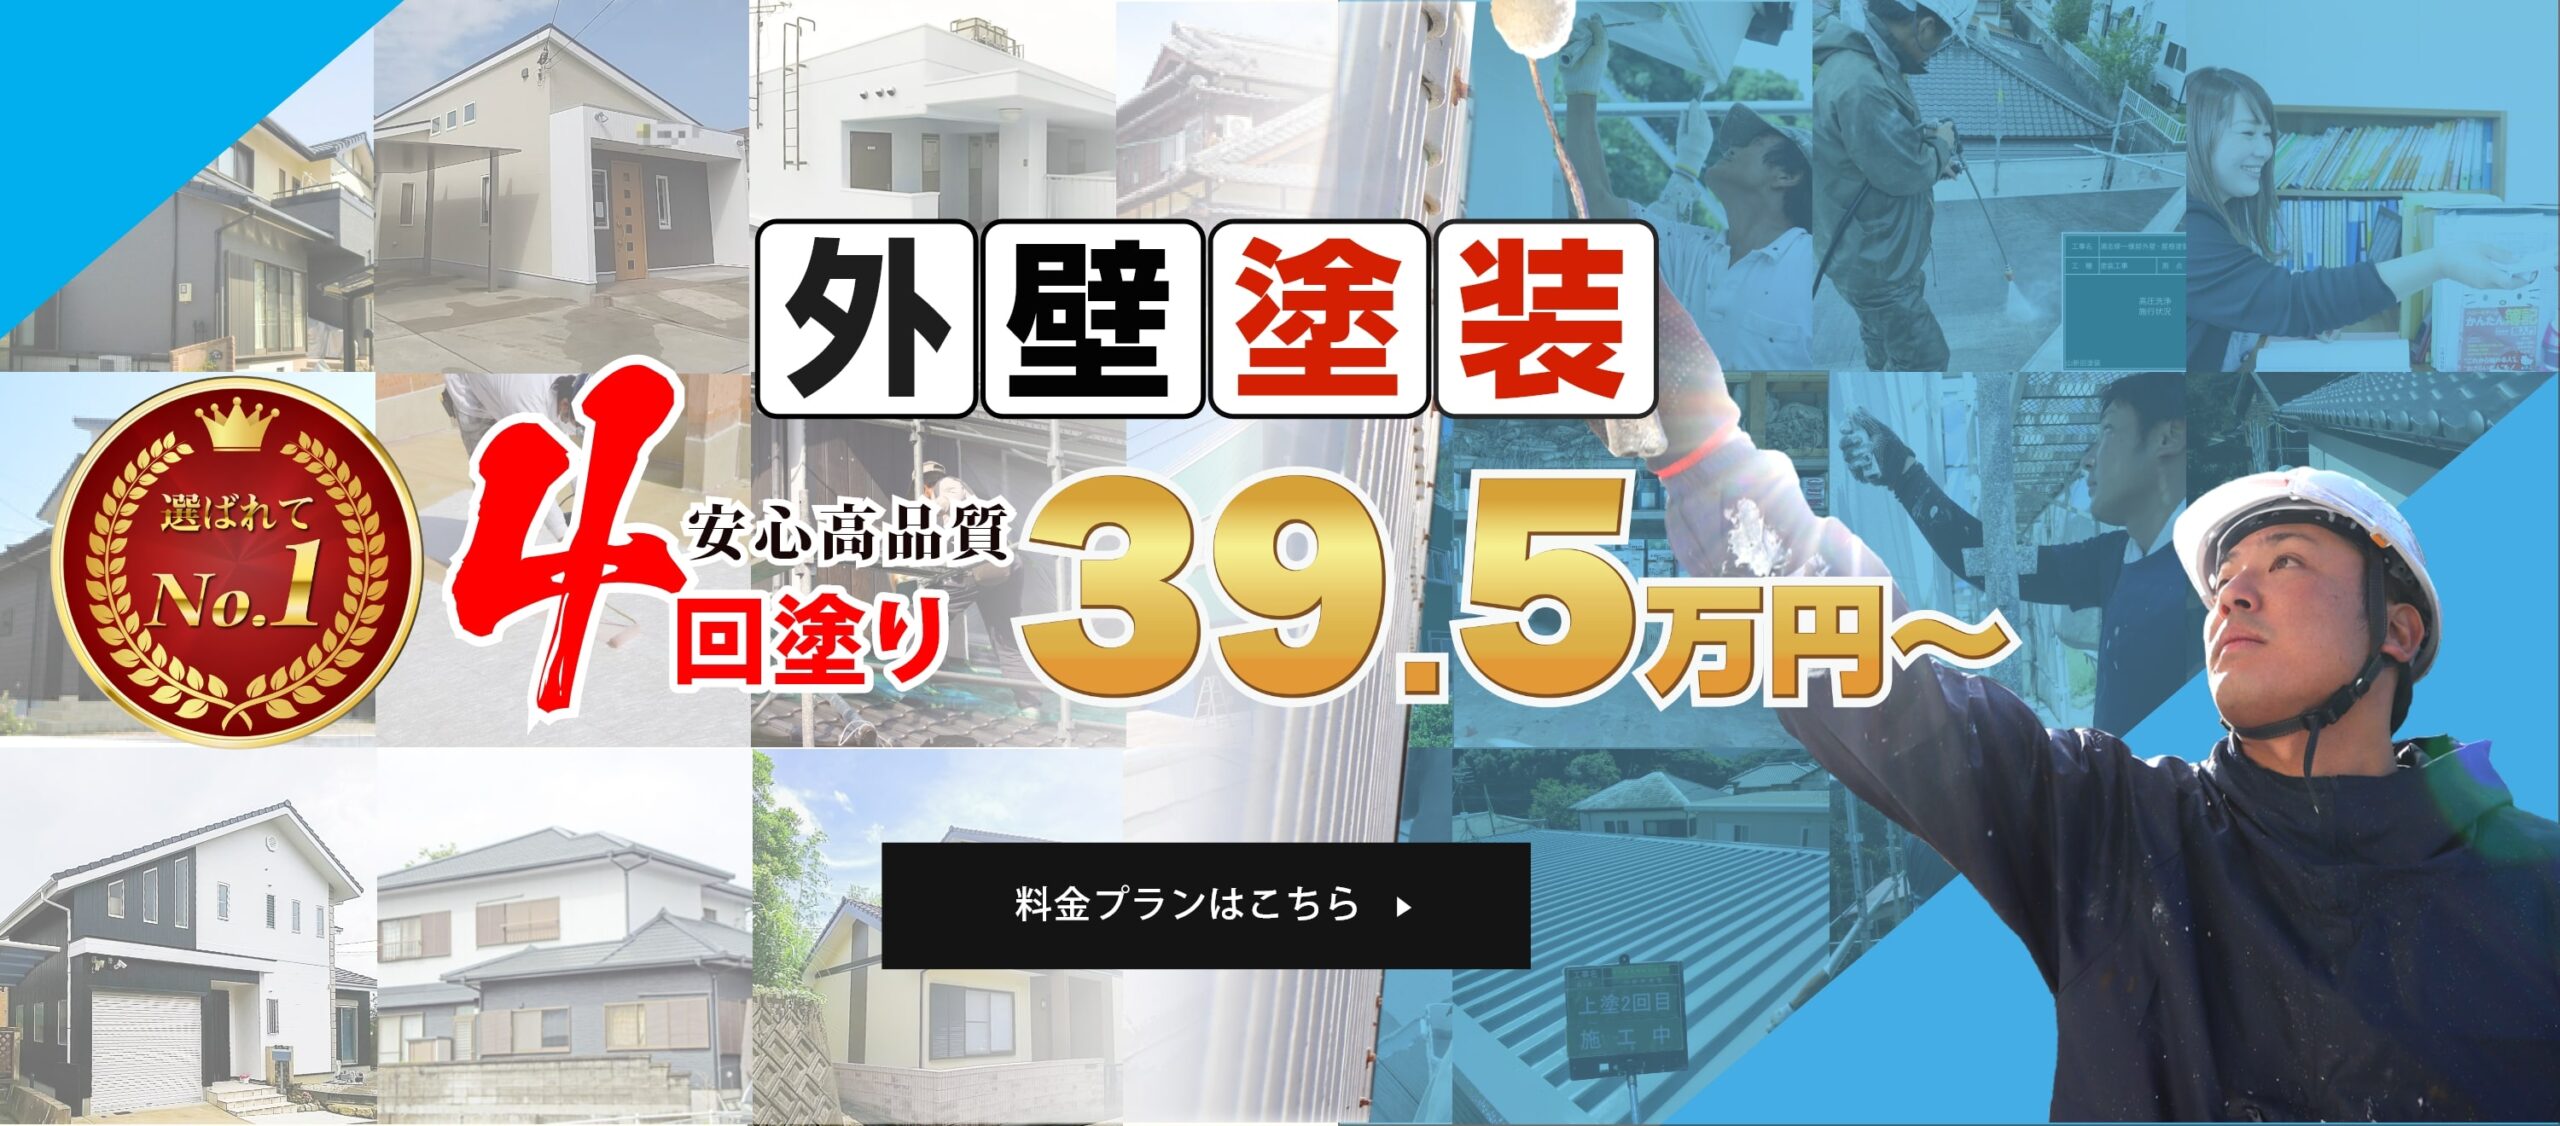 長崎市諫早市の外壁塗装は安心こだわり4回塗り39.5万円〜のやまにた塗装